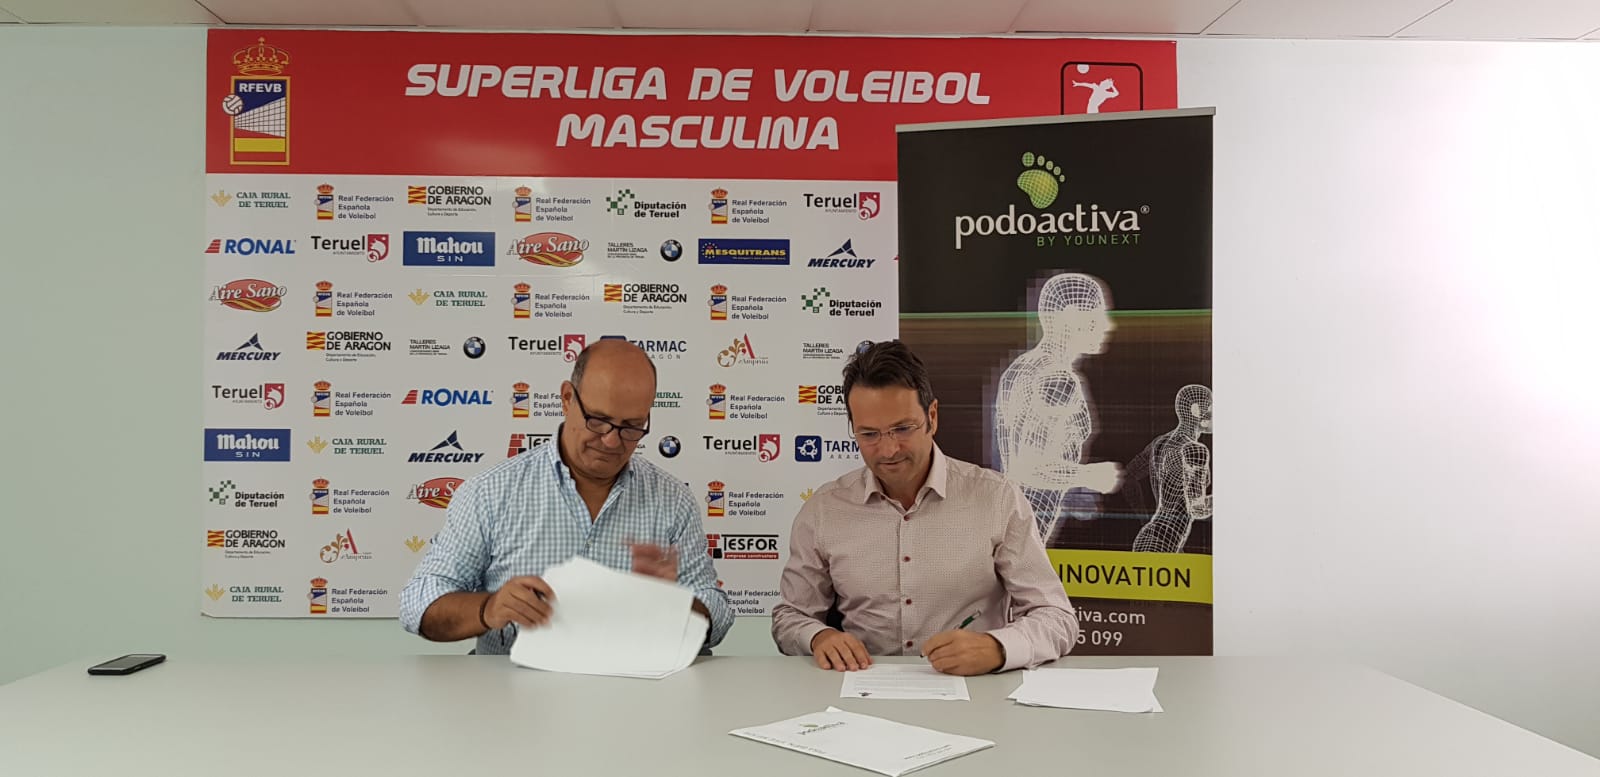 Podoactiva y el Club Voleibol Teruel, una alianza que cumple diez años